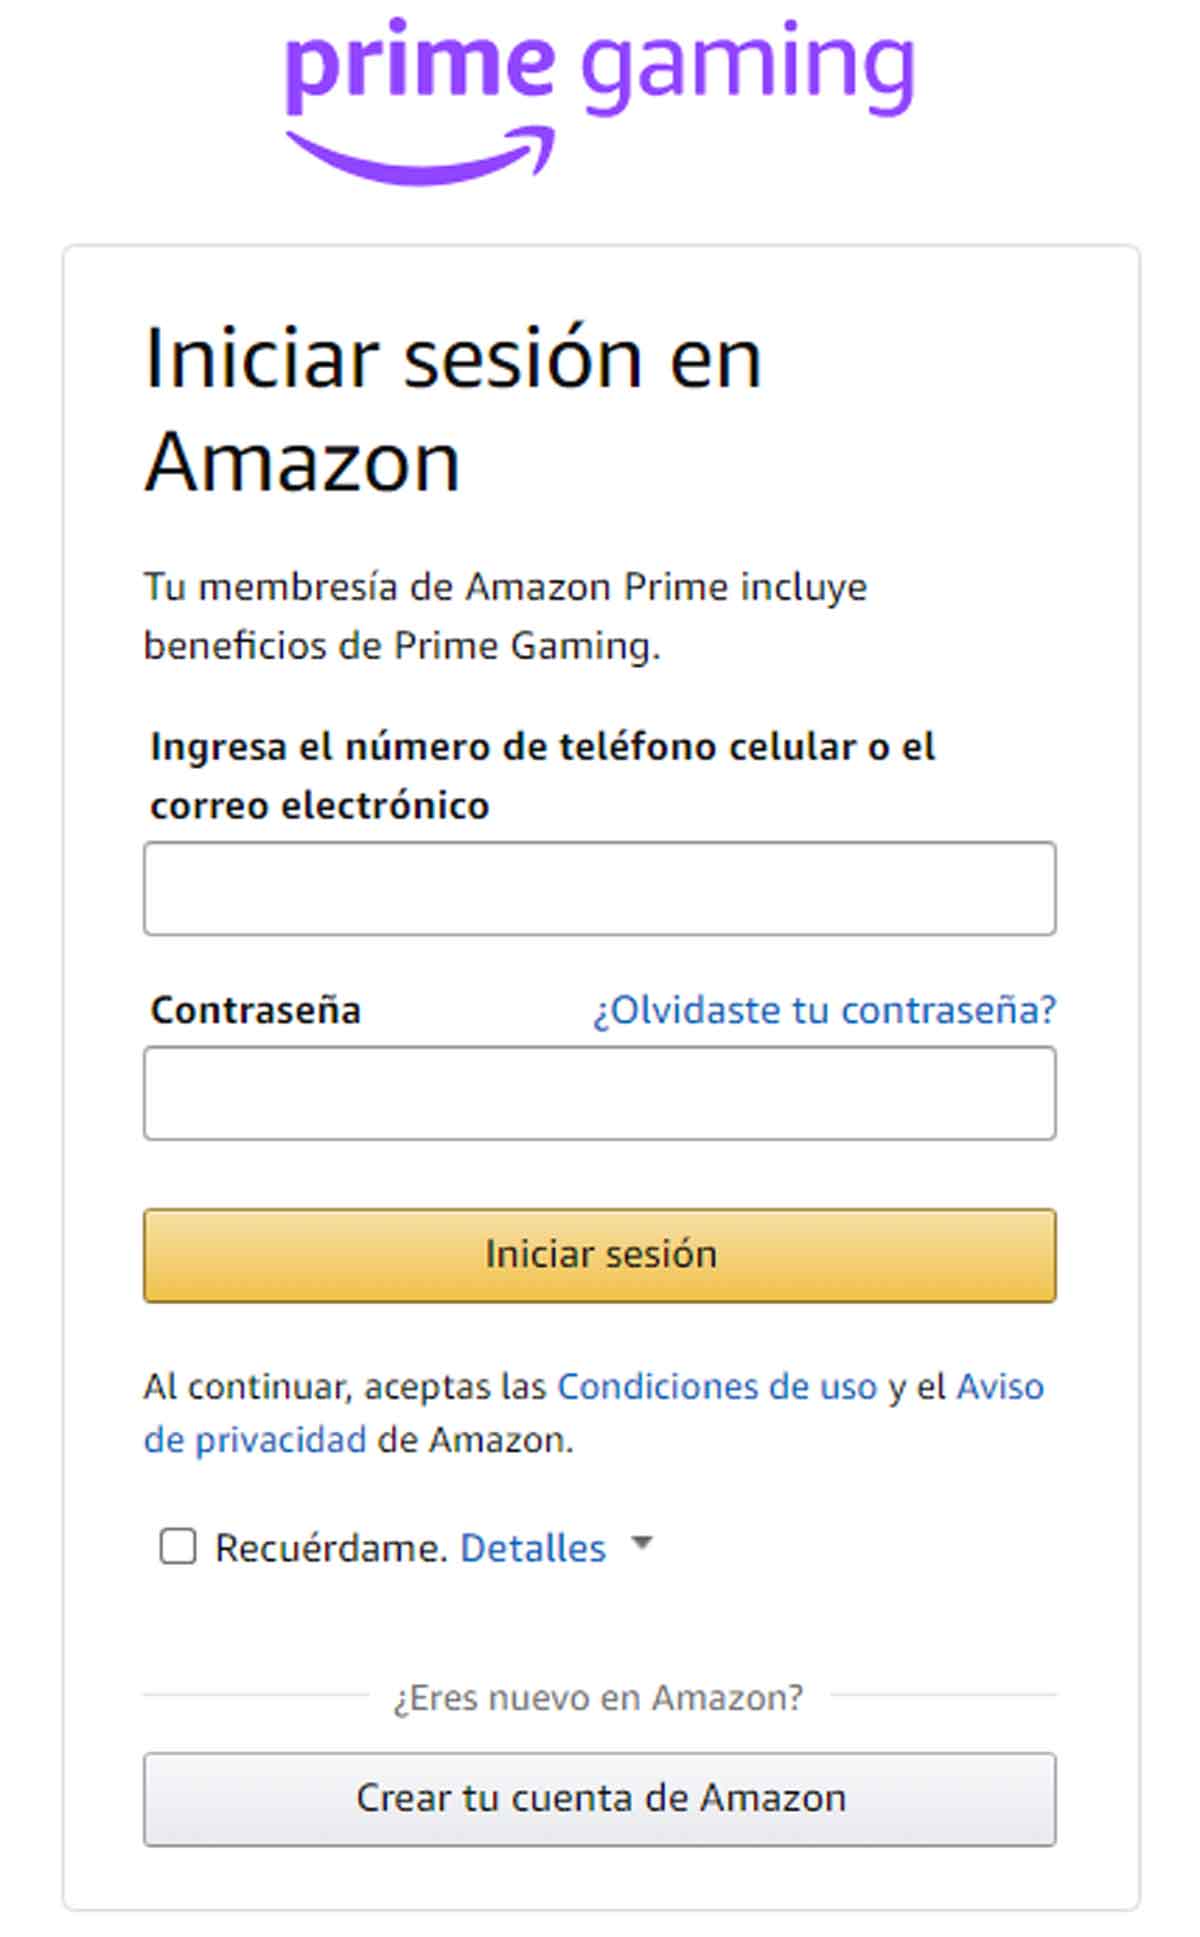 Iniciar sesión en Amazon.